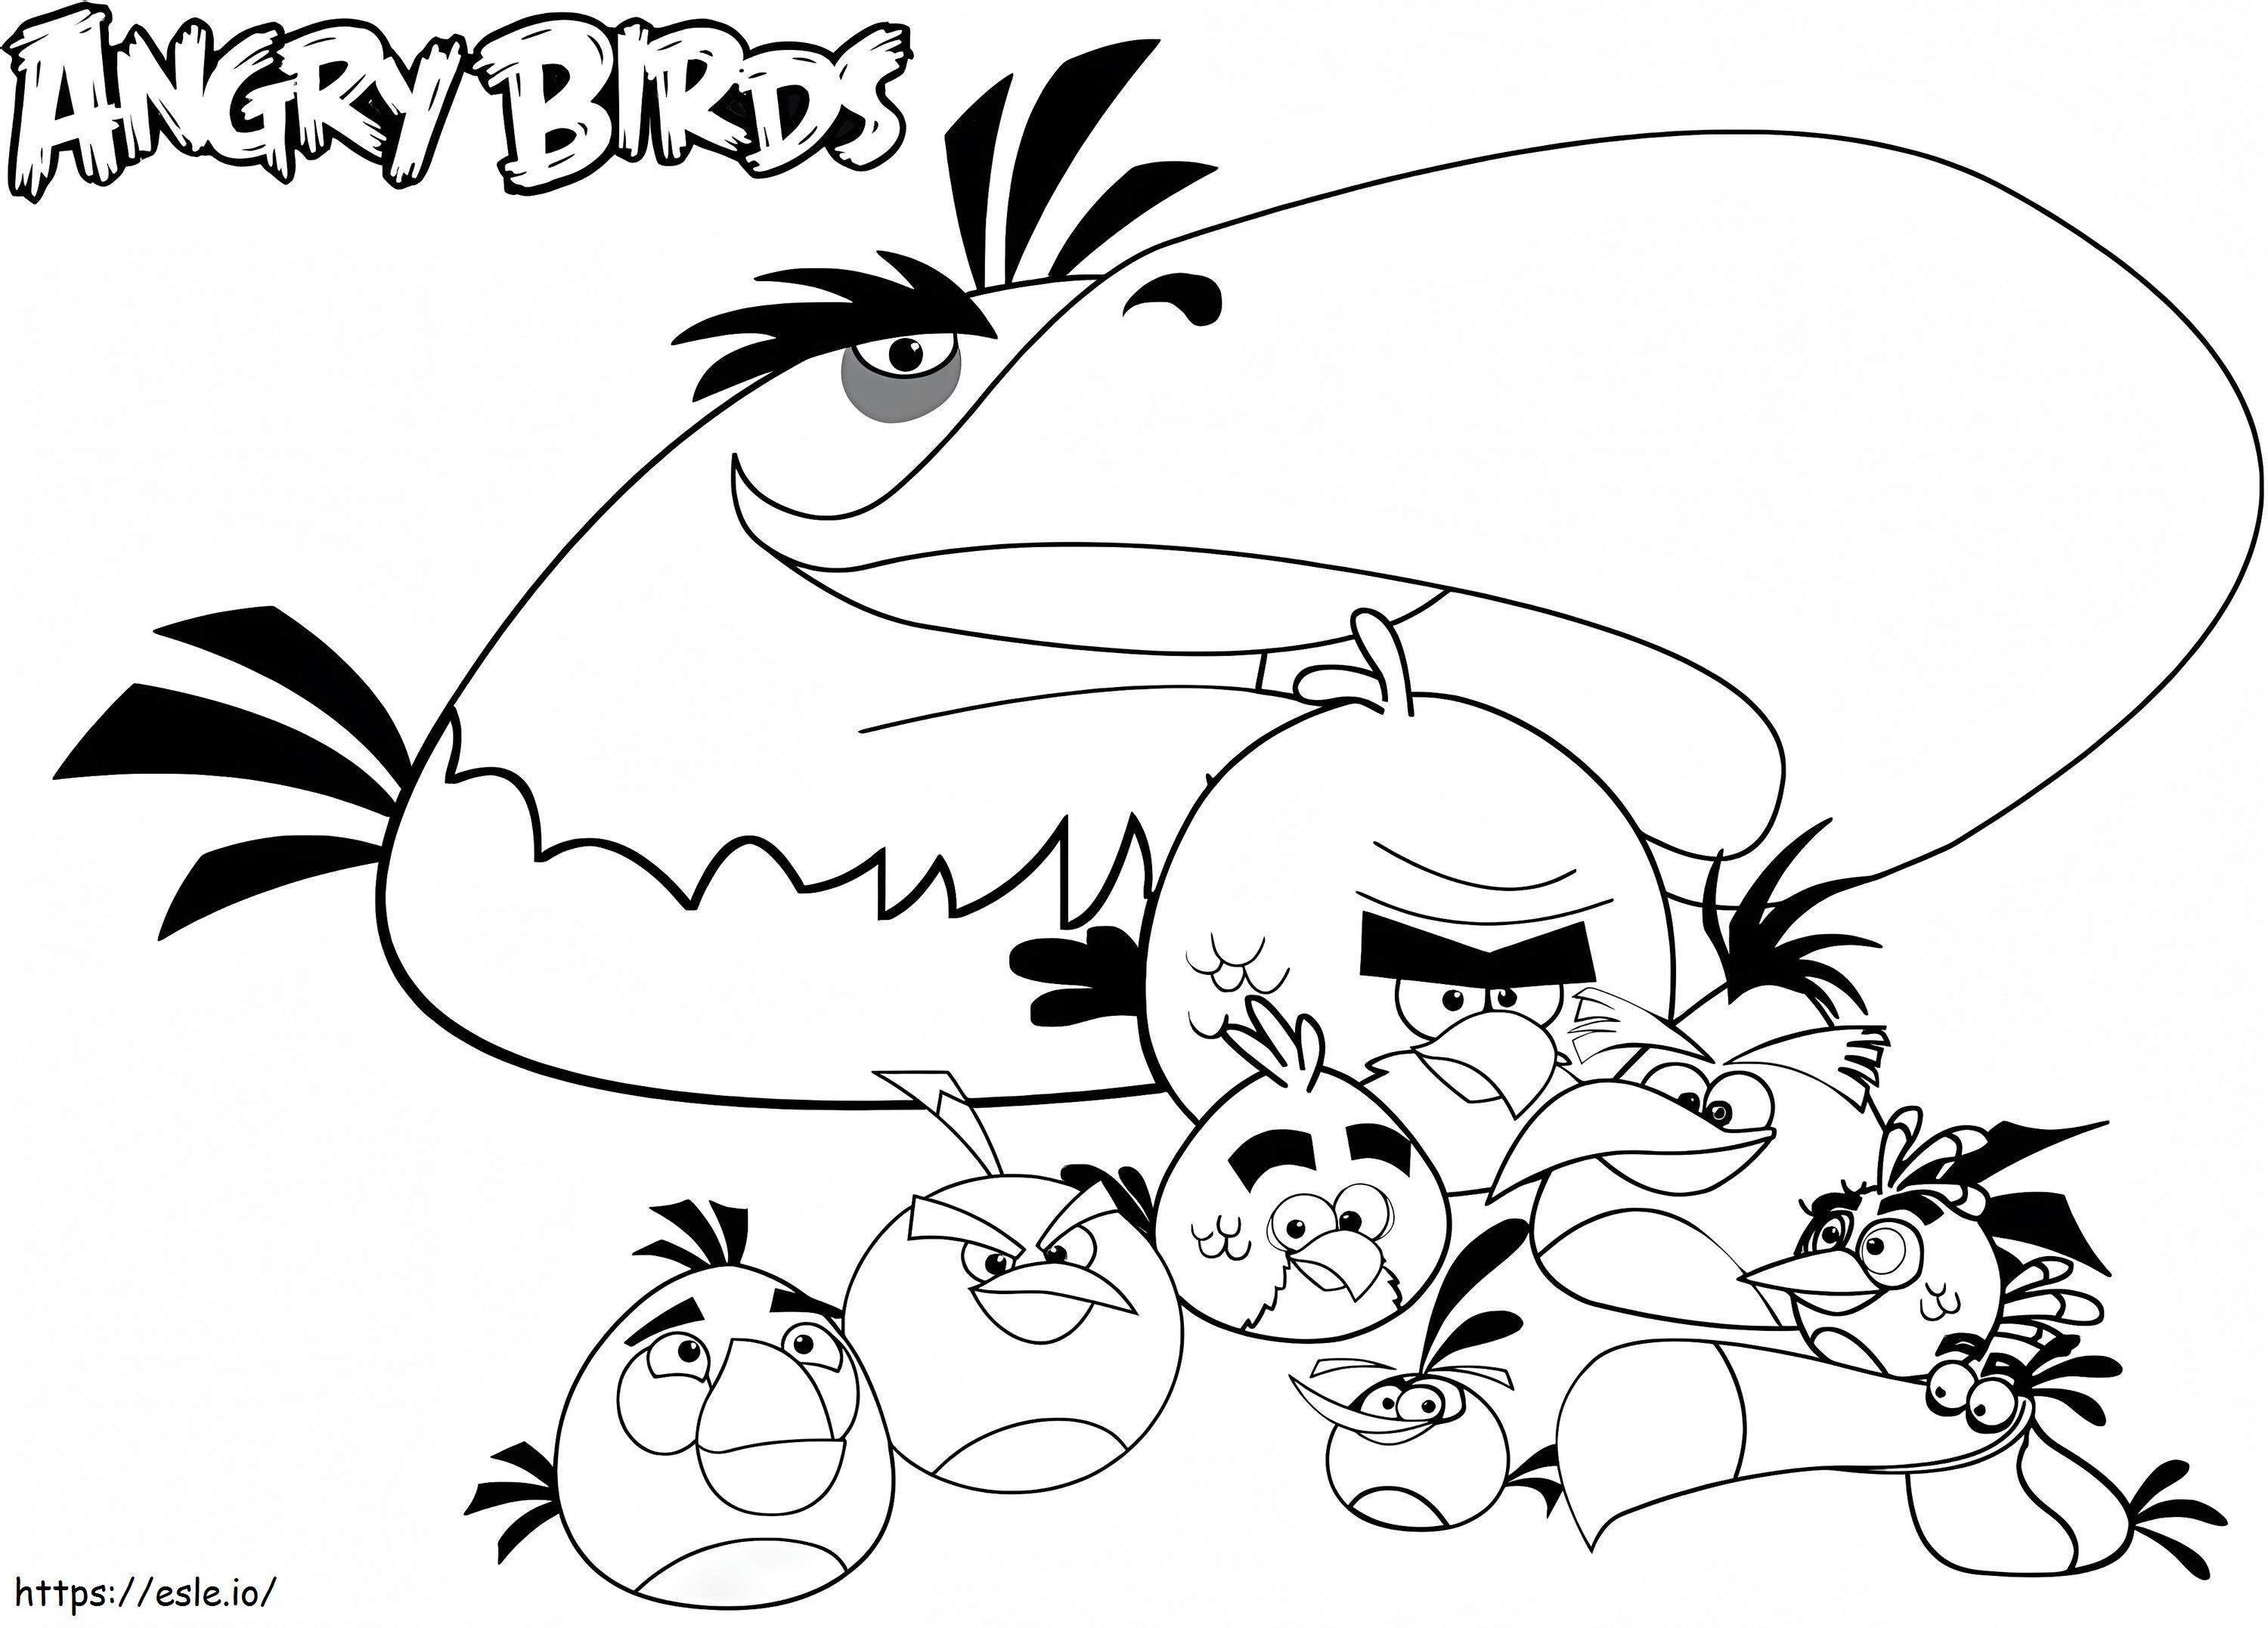 Angry Birds idealne kolorowanka